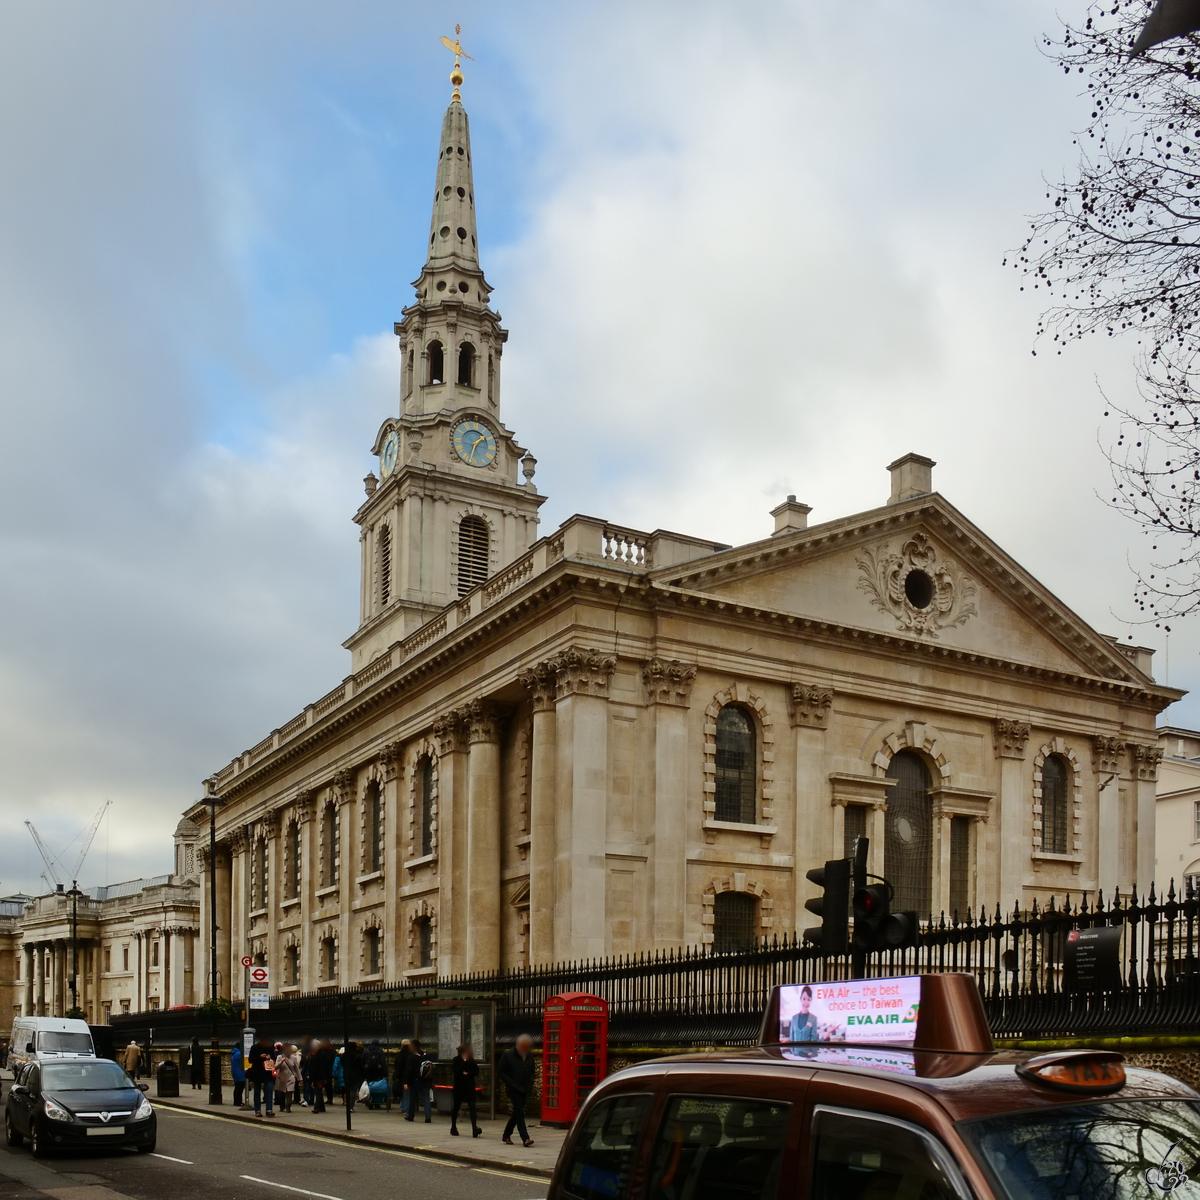 Die in den Jahren 1721 bis 1726 erbaute Kirche St. Martin in the Fields befindet sich in der Nhe des Trafalgar Square in London. (September 2013)